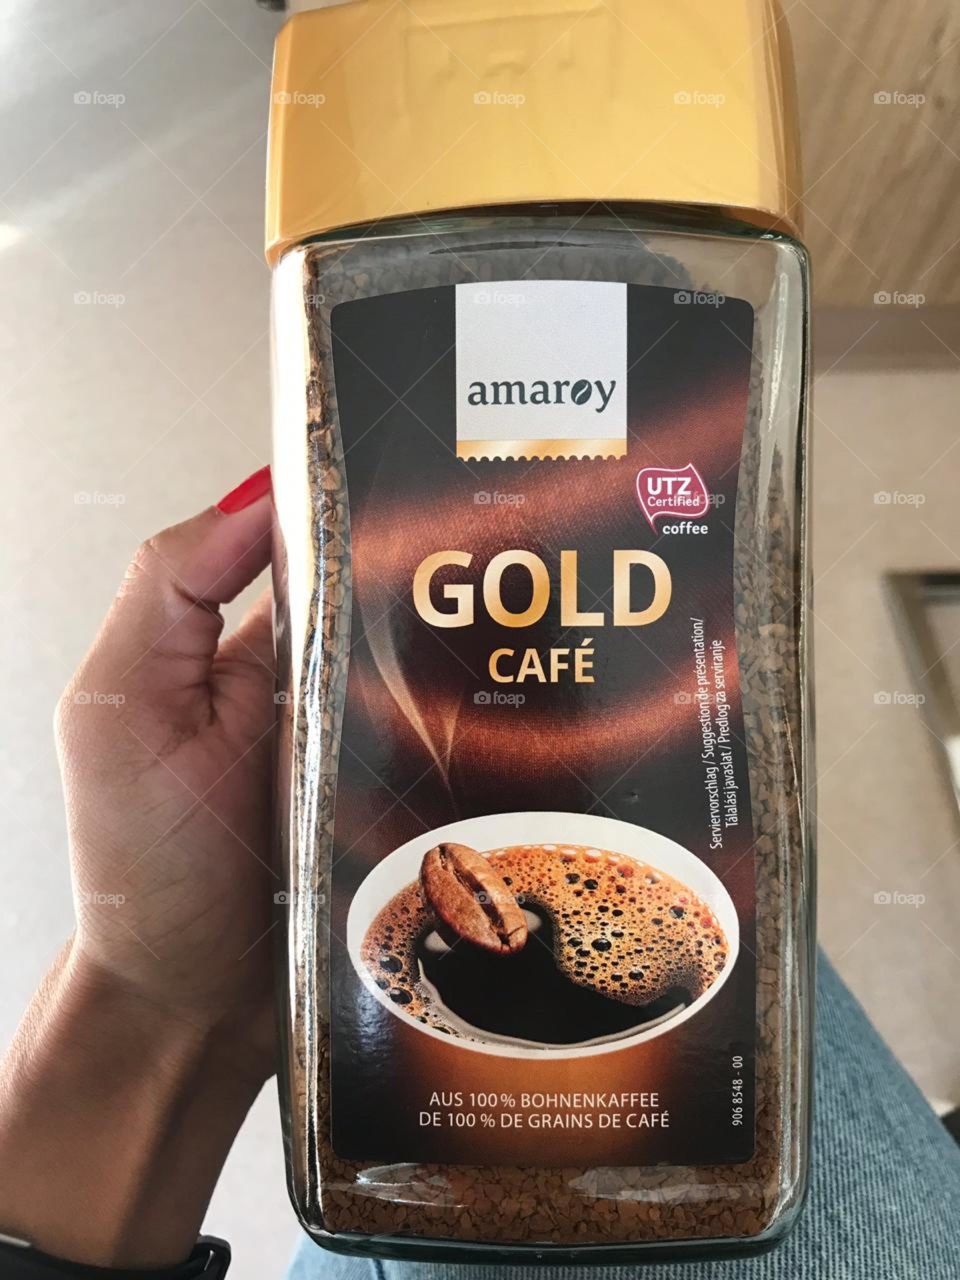 coffe food gold café amaroy